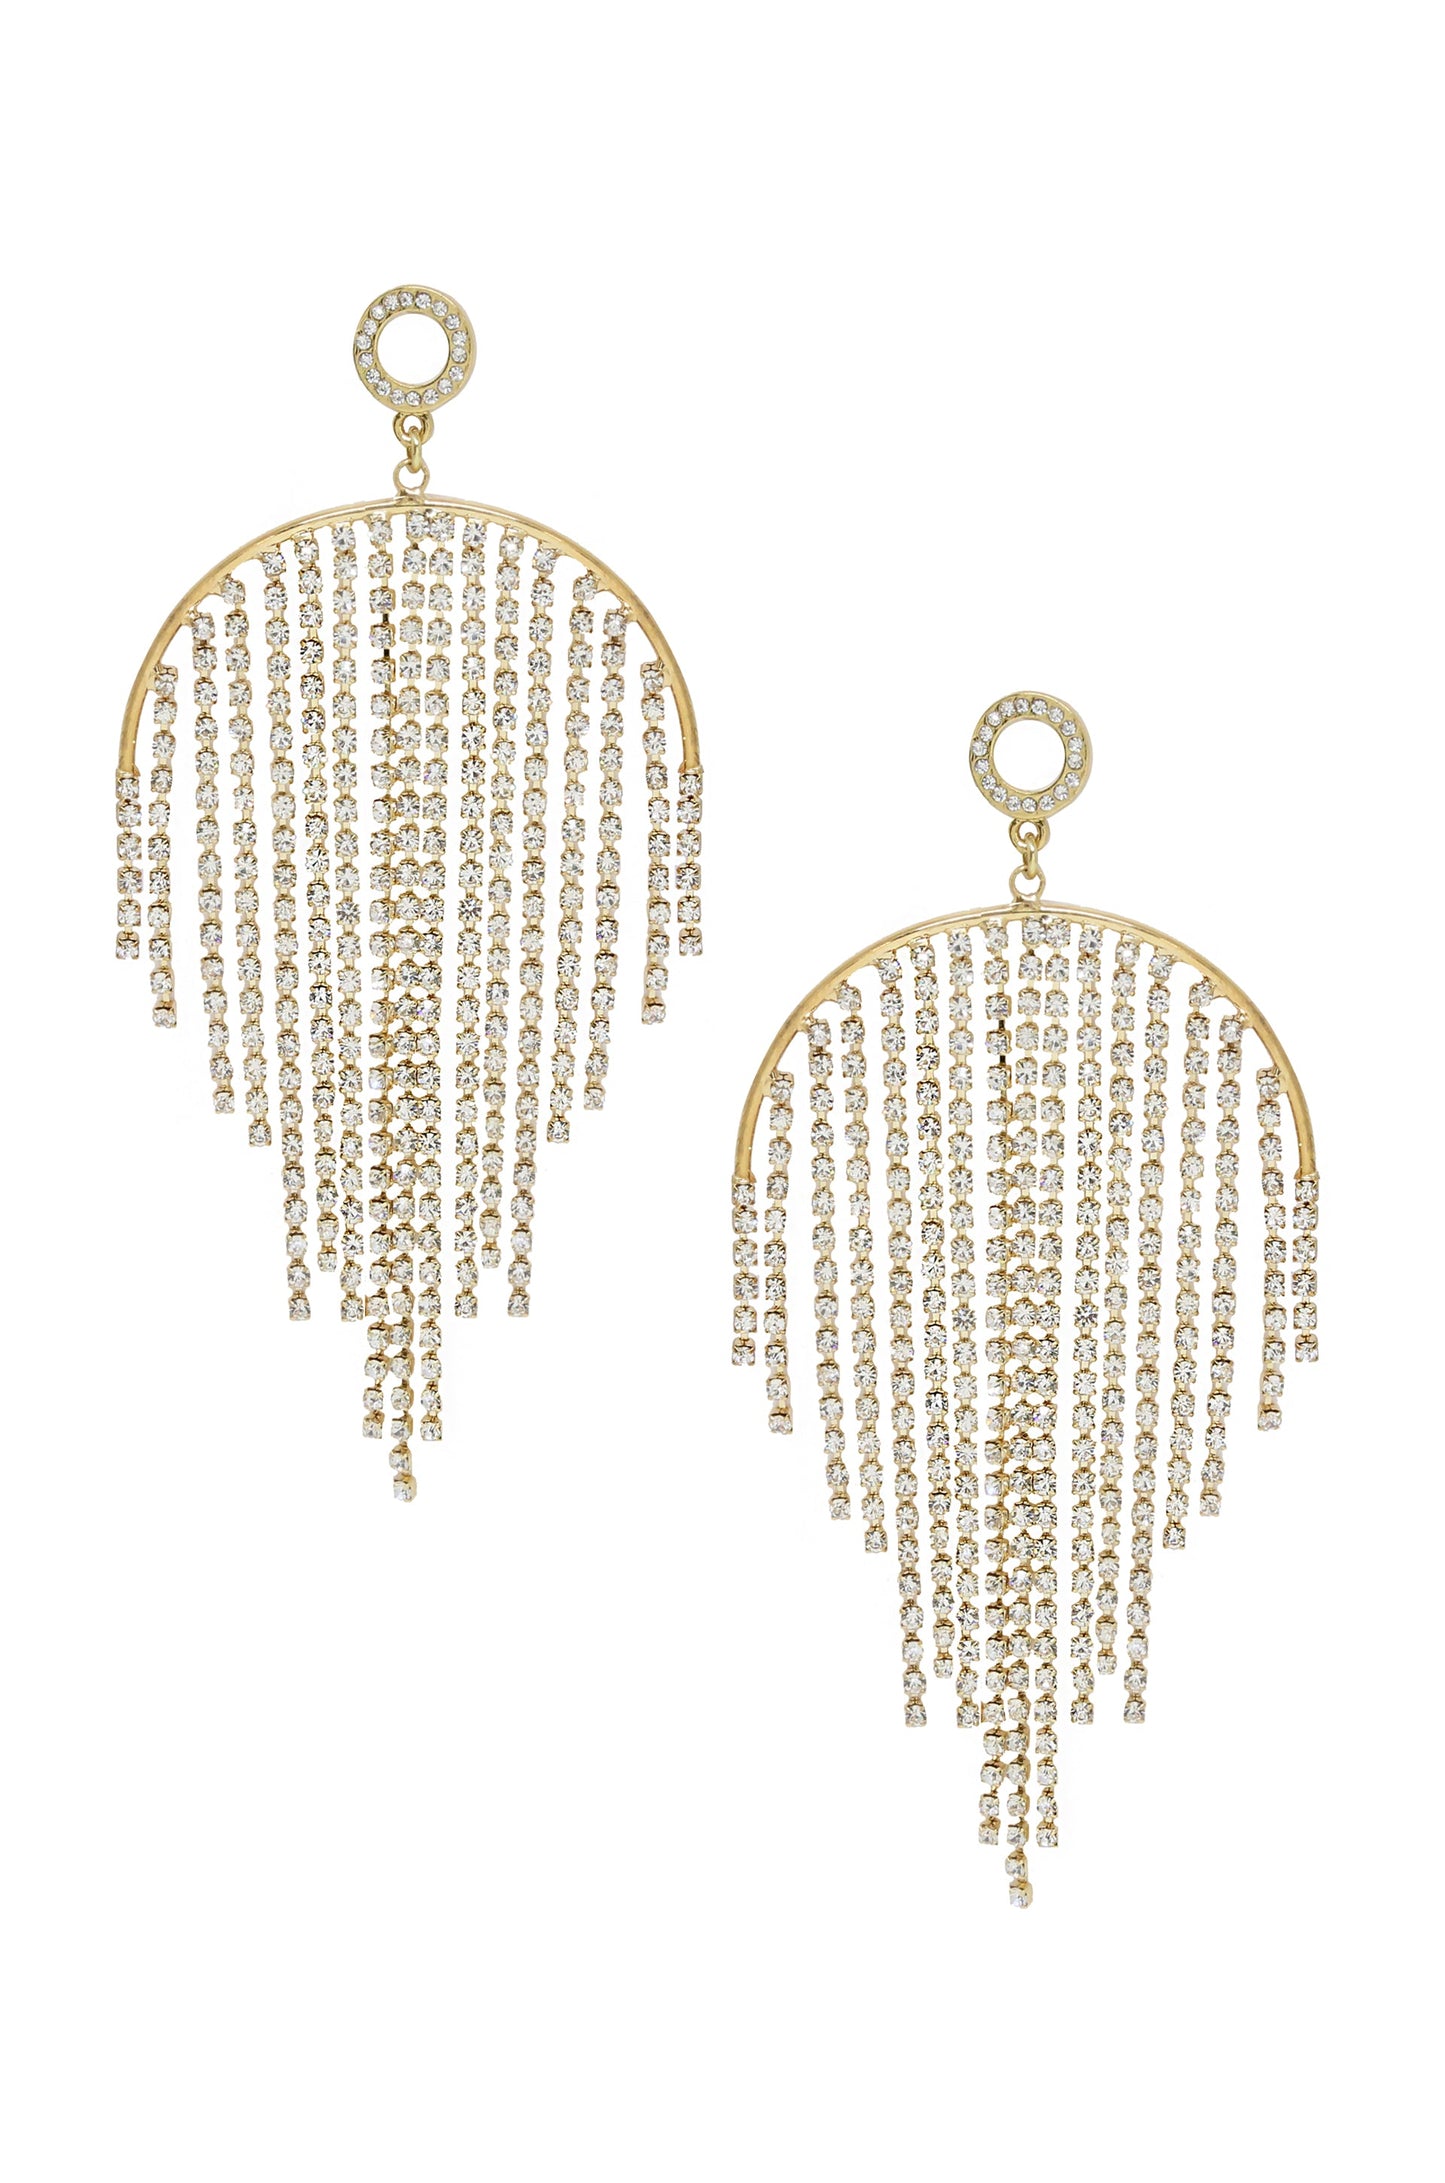 Crystal Elegance Fringe 18k Gold Plated Earrings